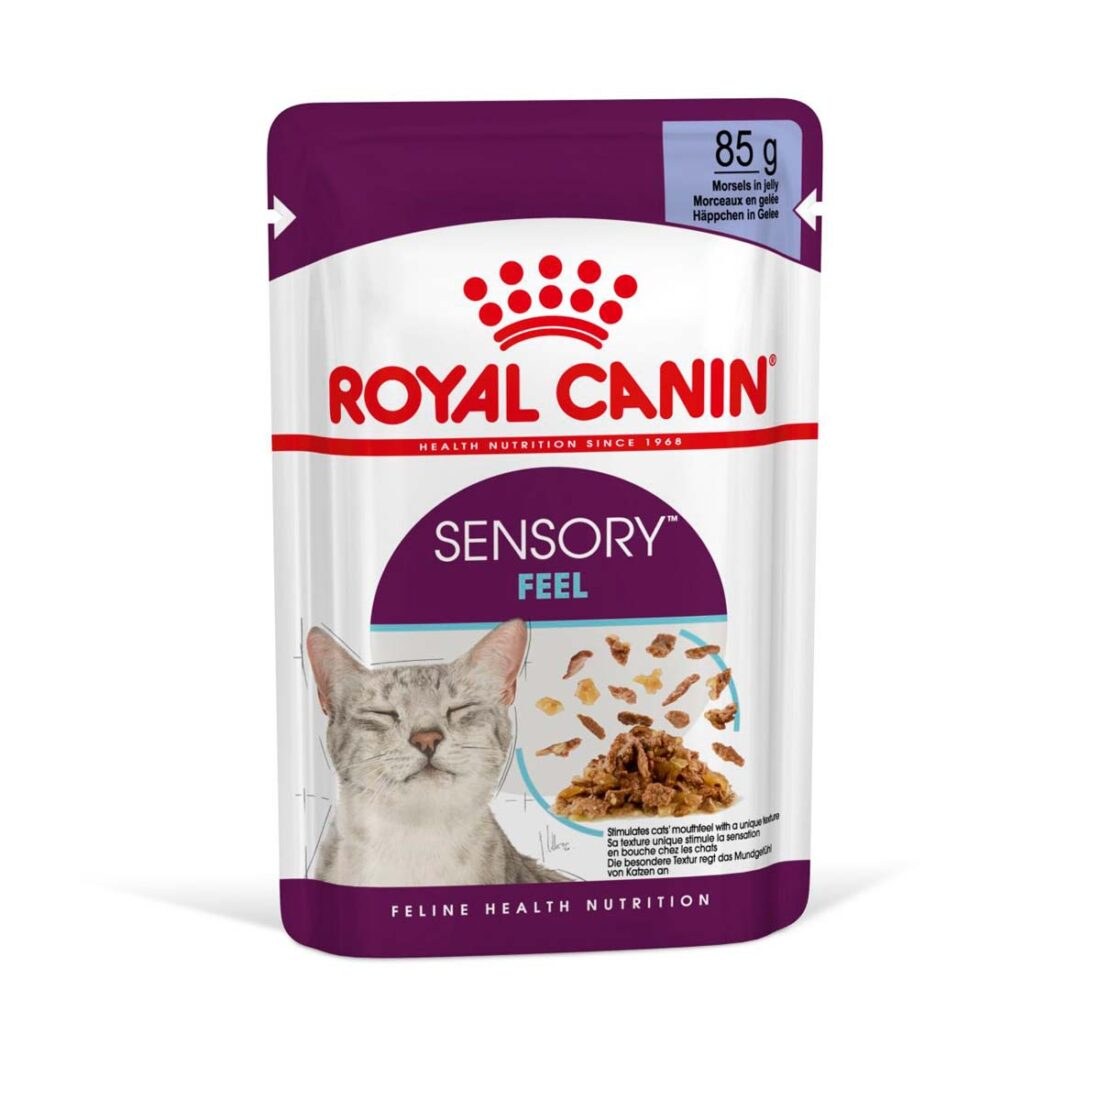 Royal Canin Sensory Feel